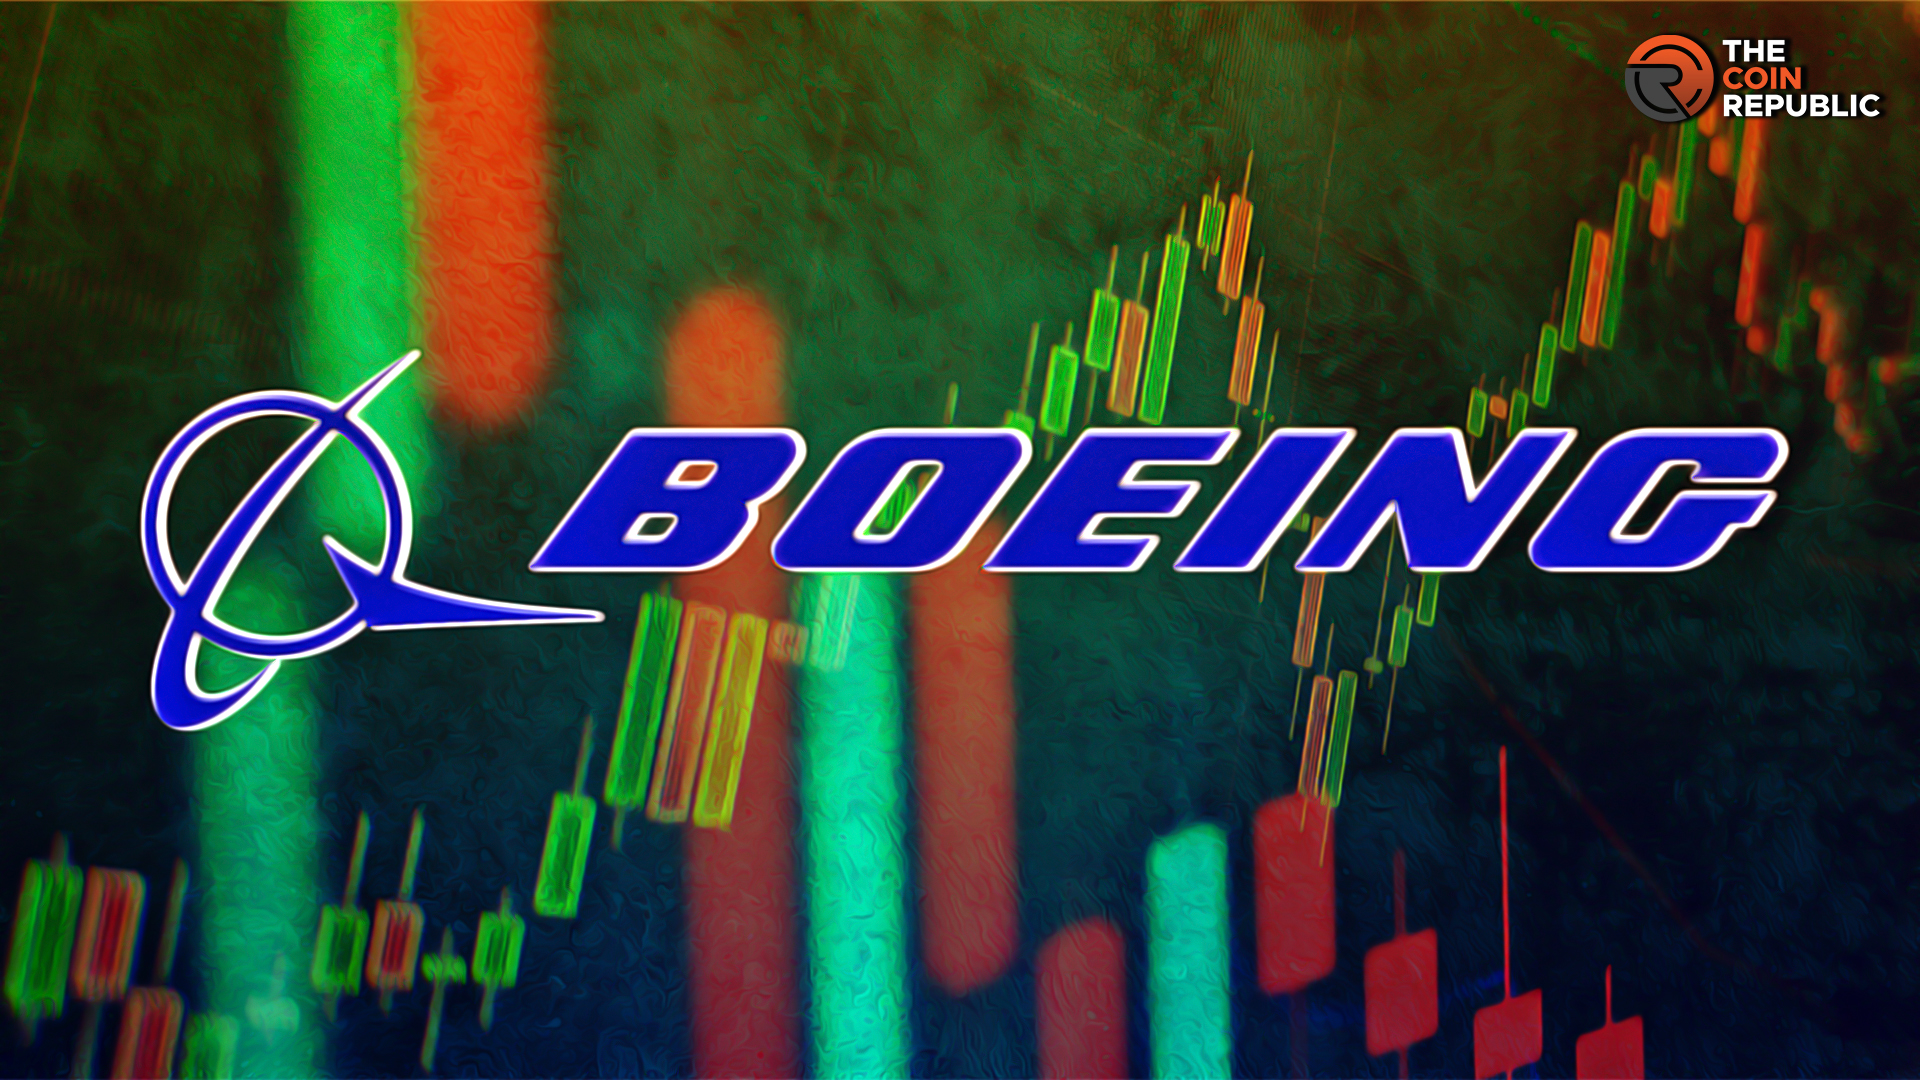 Boeing Stock: Is BA Stock Price Below $200 Ahead of Earnings?